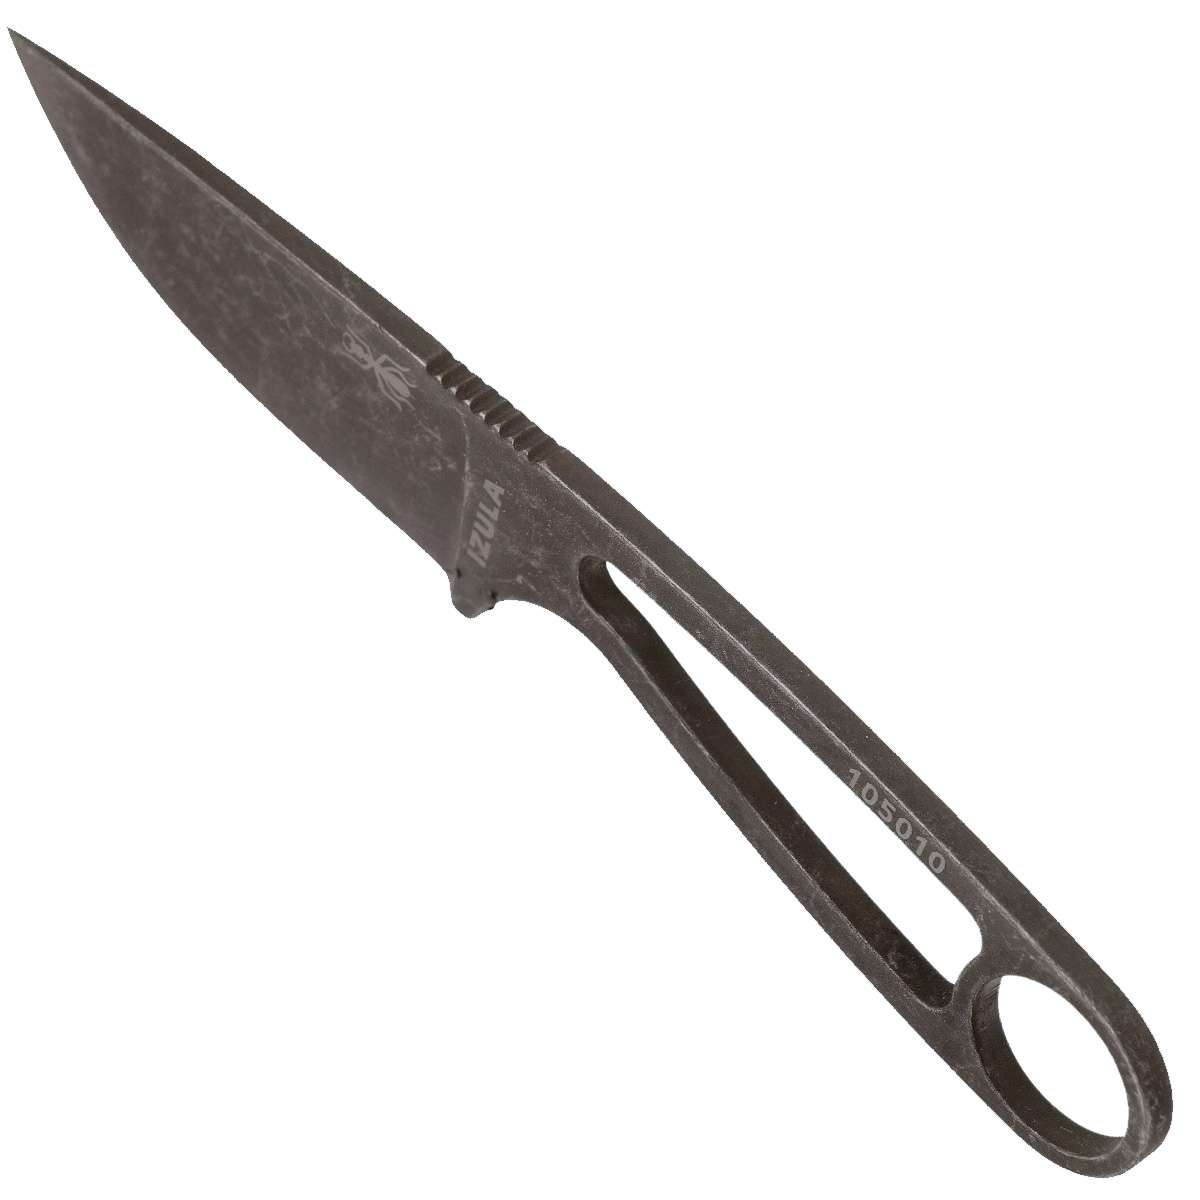 ESEE Izula Knife IZULA-B-BO - Black Oxide